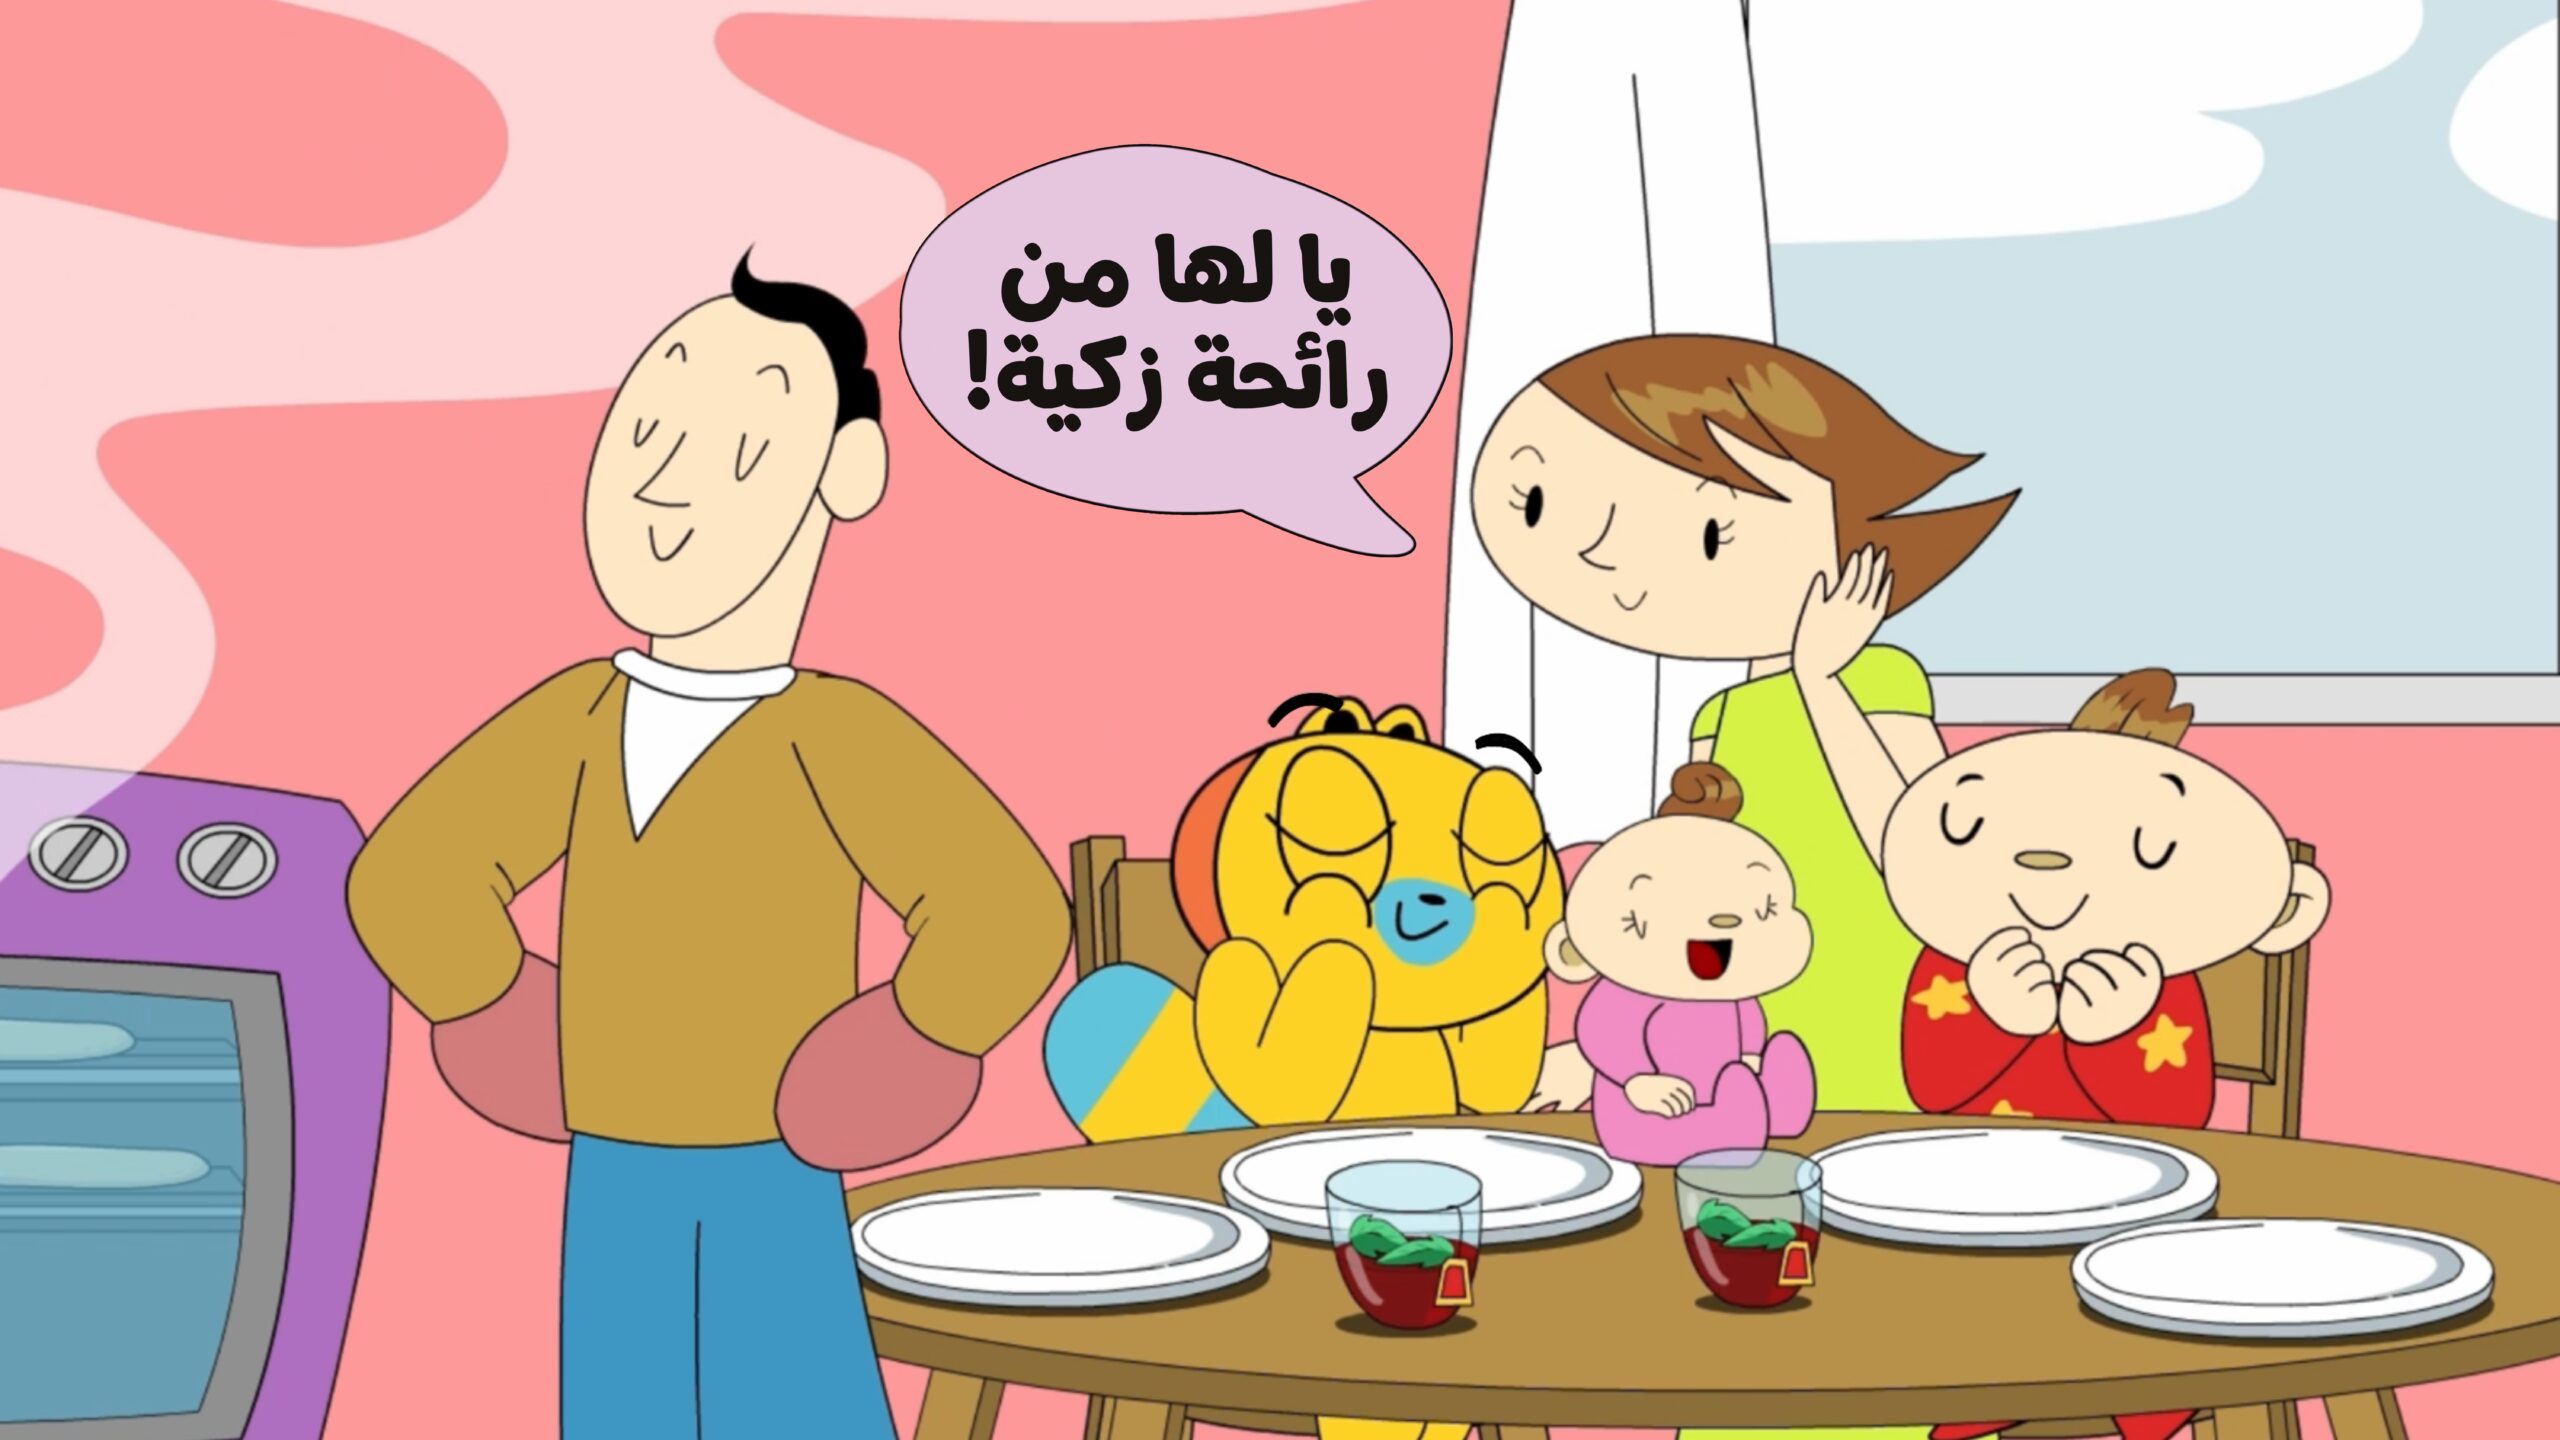 ٦ طرق لتعلم اللغة العربية من خلال جعلها جزءا من حياتك اليومية